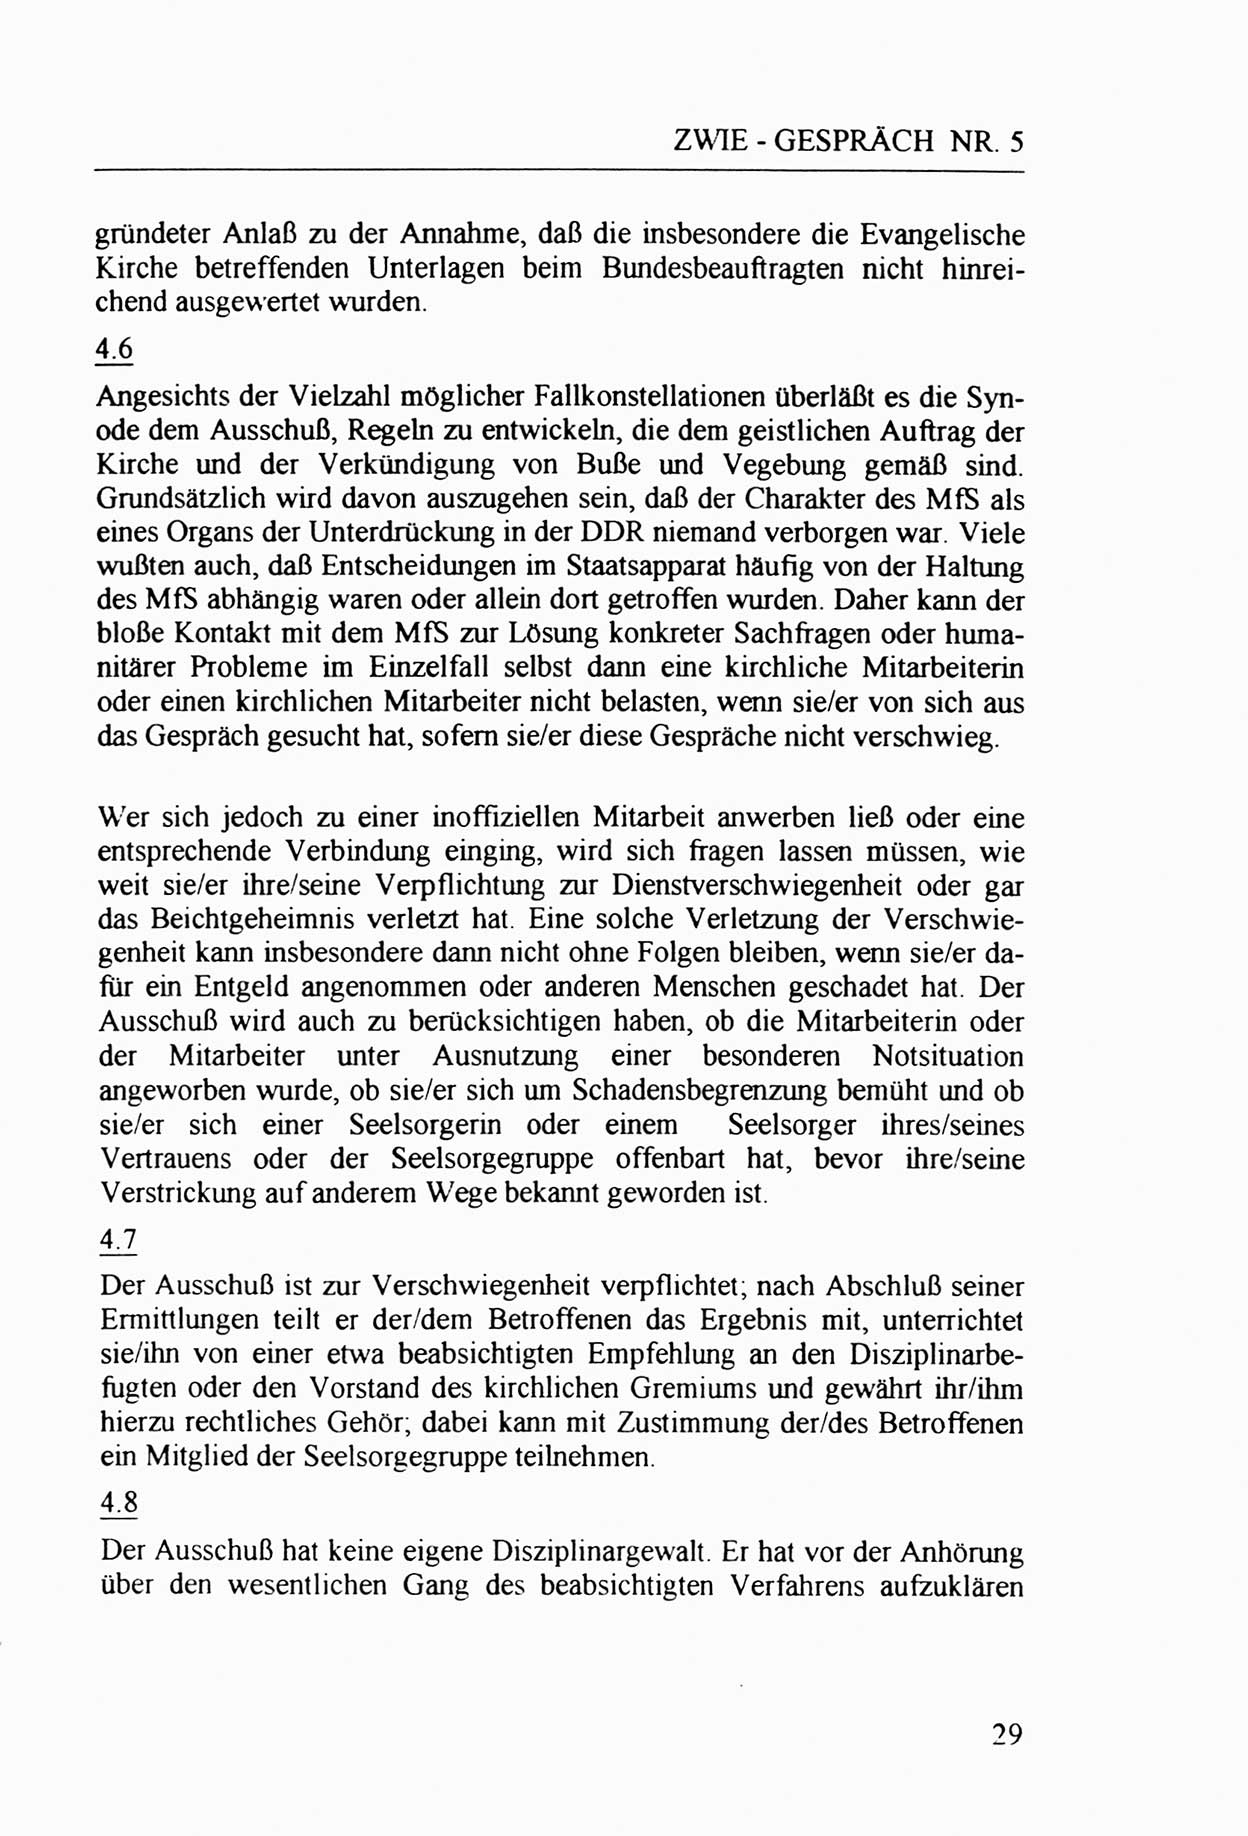 Zwie-Gespräch, Beiträge zur Aufarbeitung der Staatssicherheits-Vergangenheit [Deutsche Demokratische Republik (DDR)], Ausgabe Nr. 5, Berlin 1991, Seite 29 (Zwie-Gespr. Ausg. 5 1991, S. 29)